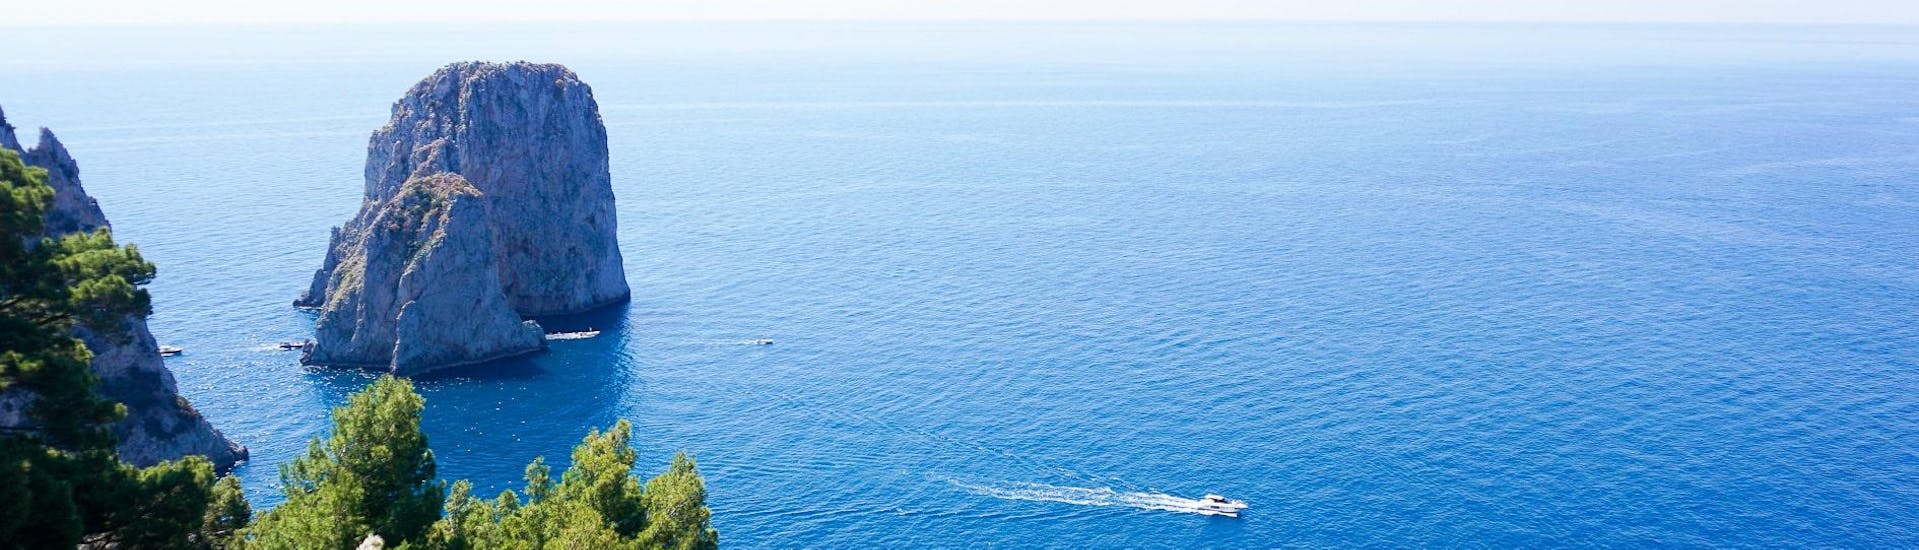 Temps idéal pour la demi-journée d'excursion en bateau de Sorrento à Capri avec la Grotte bleue.